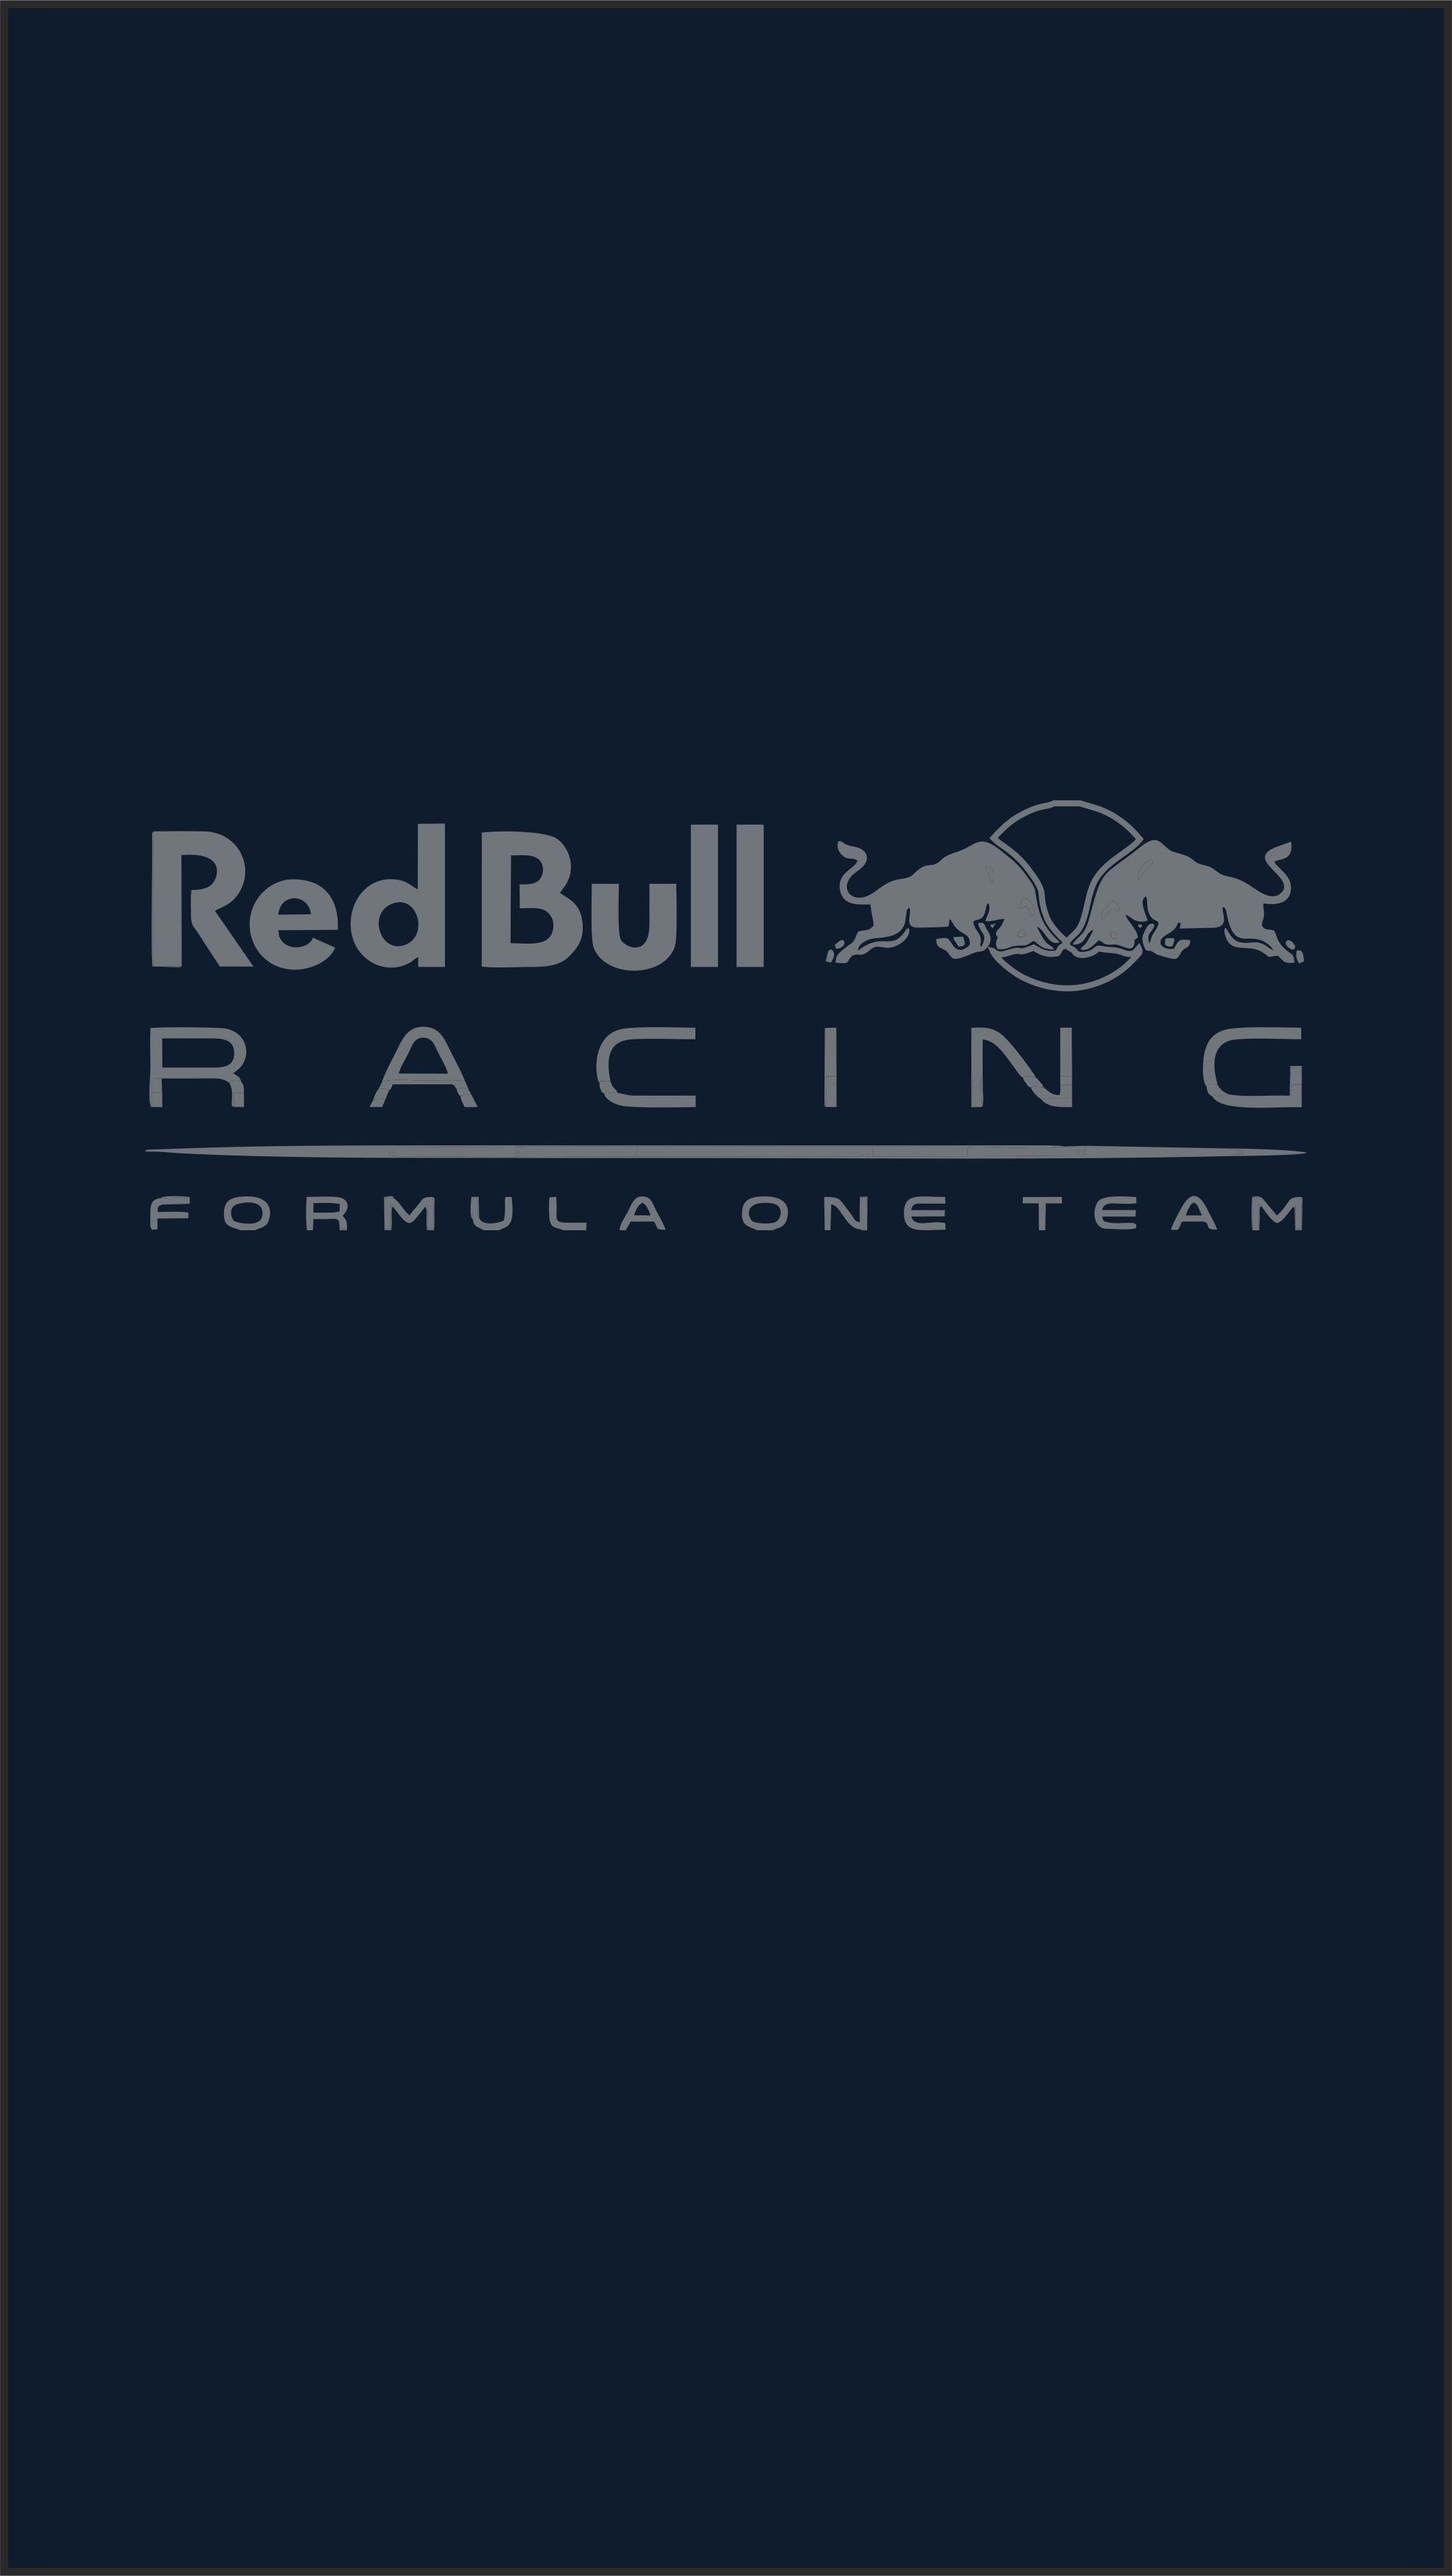 Red Bull Racing Wallpaper iPhone New Red Bull Racing